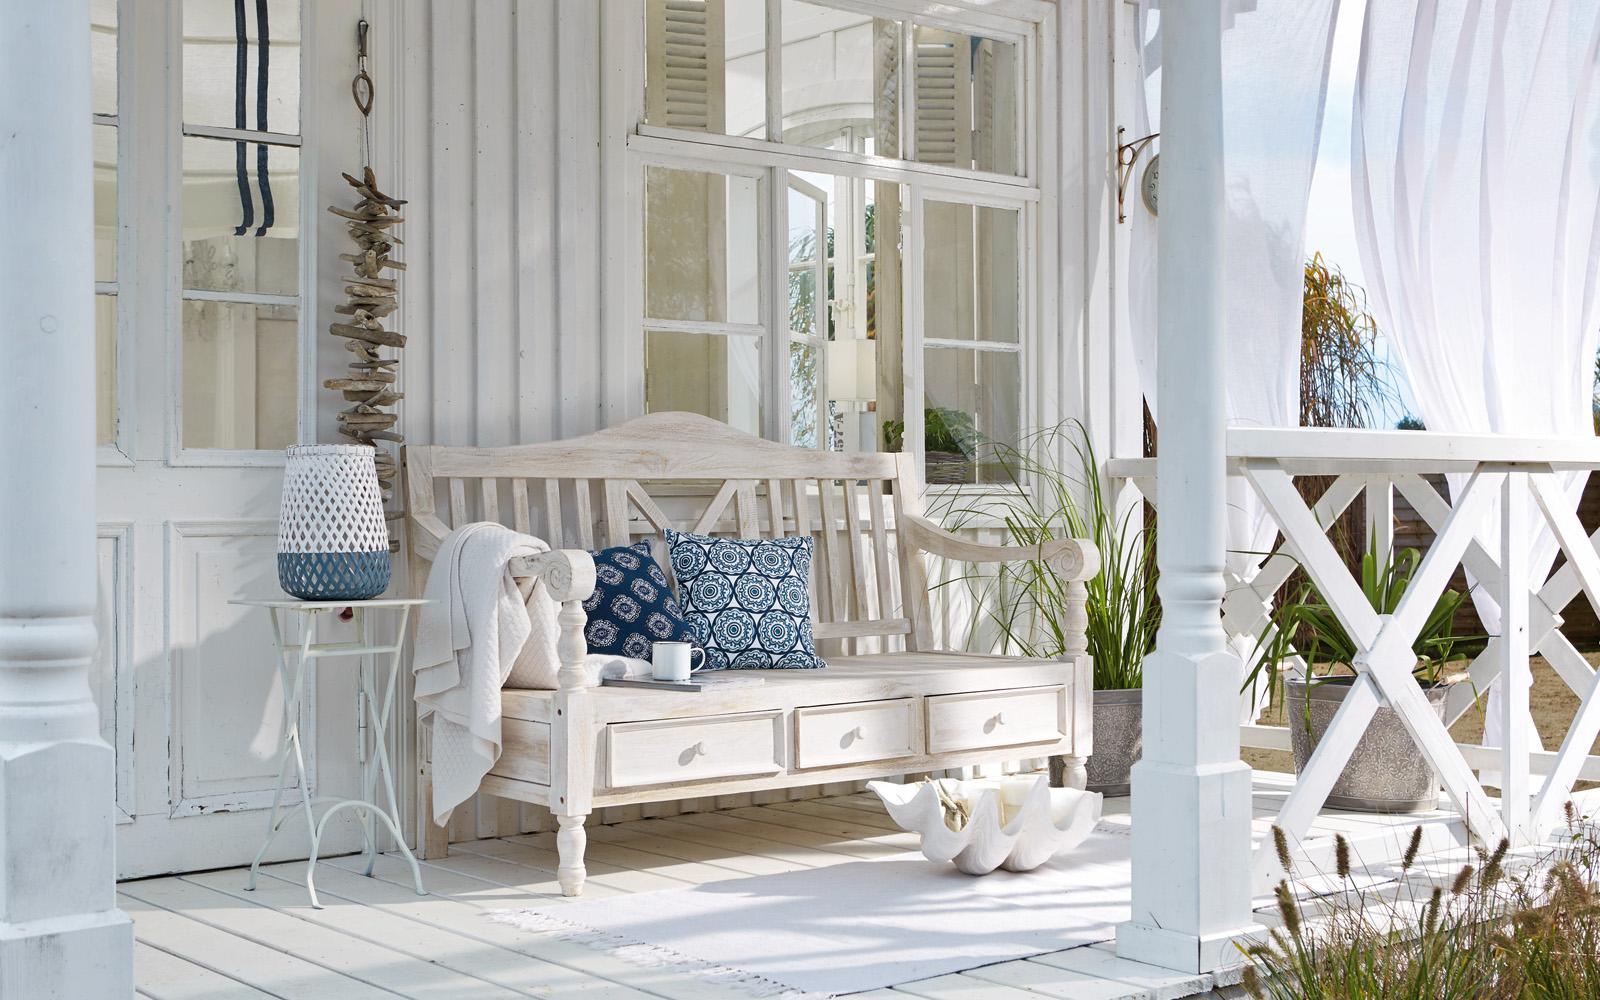 Entspannen auf der Veranda #veranda #gartengestaltung ©LOBERON